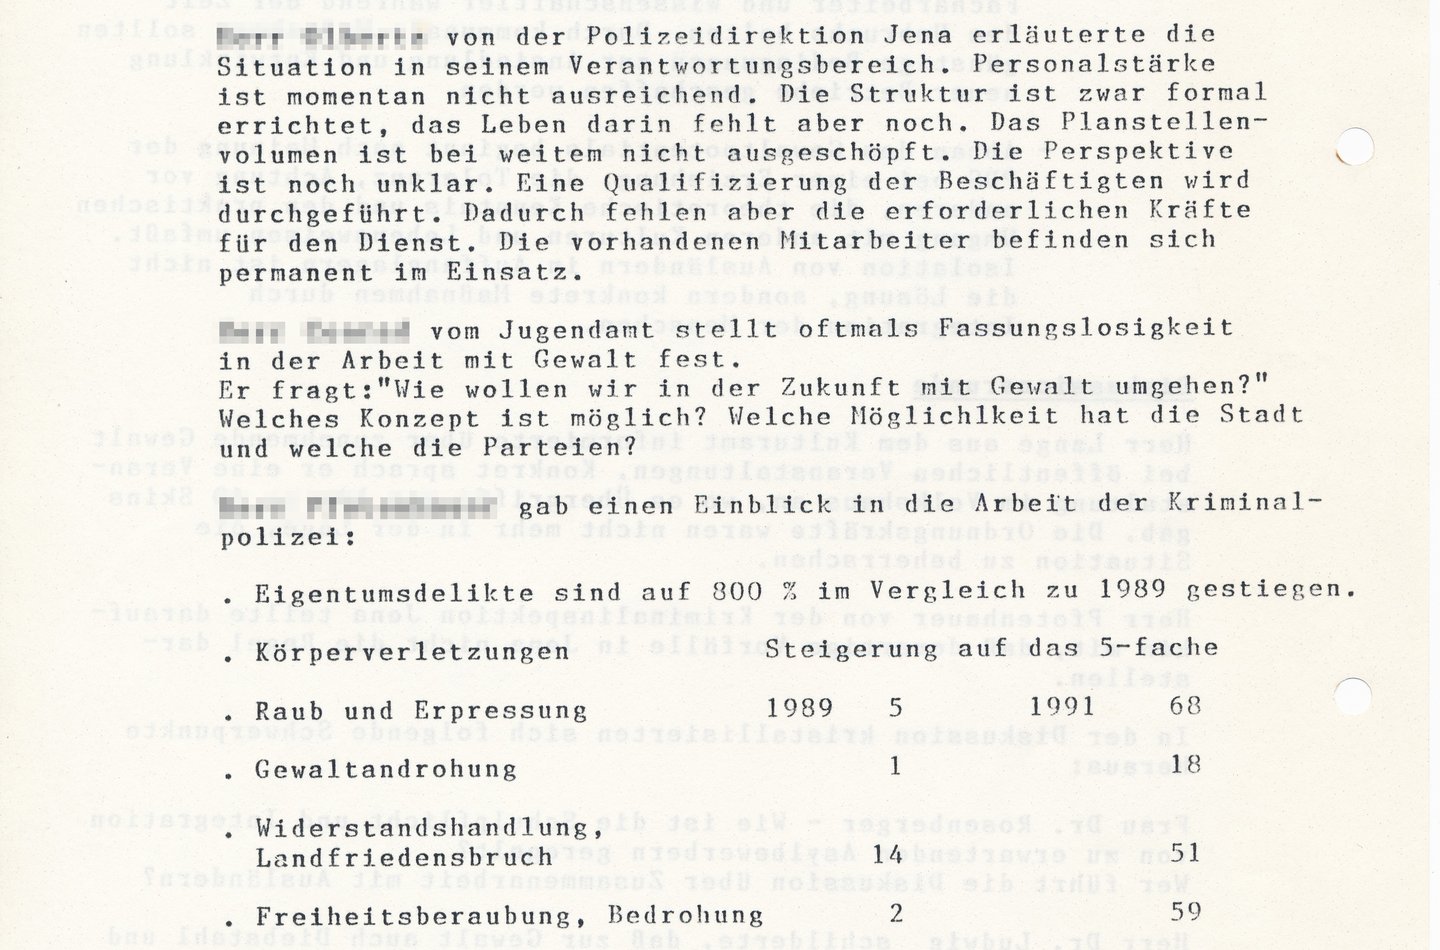 Auszug aus dem Protokoll der Sicherheitskonferenz vom 22. Oktober 1991, S. 4, ThürAZ, Sammlung Thomas Grund, Sg.: P-GT-K-14.11